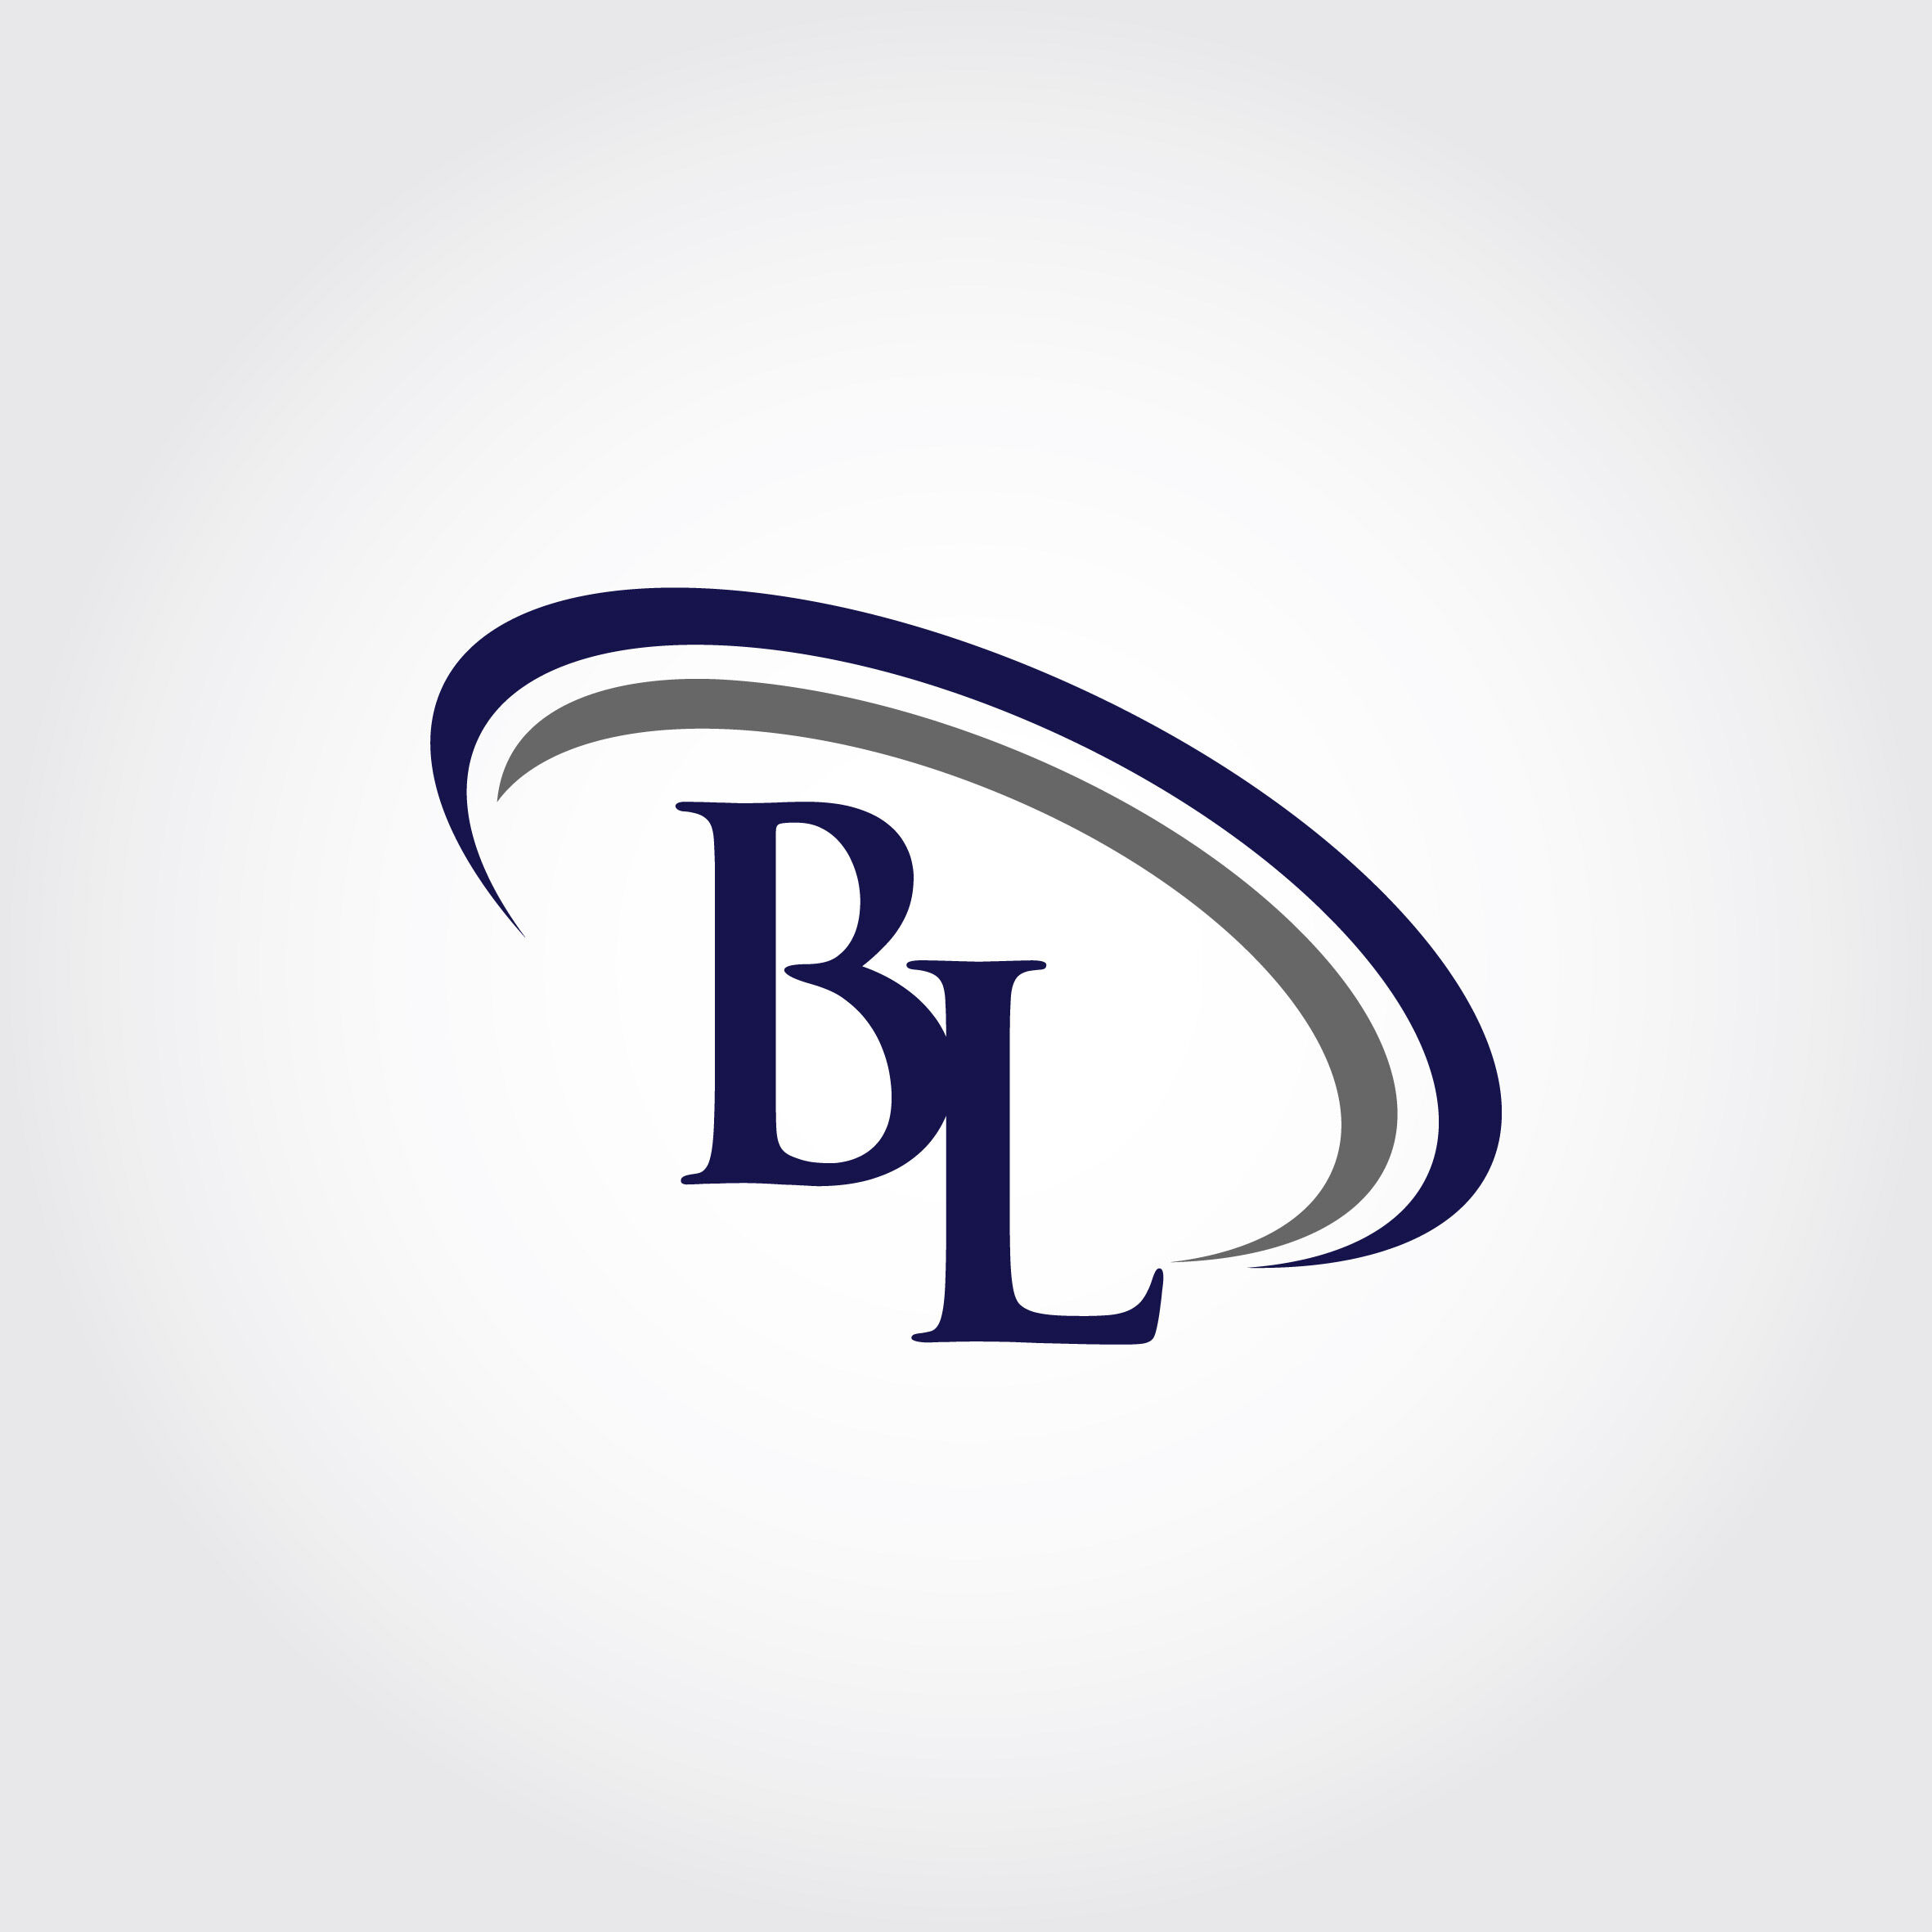 Premium Vector | Bl logo design